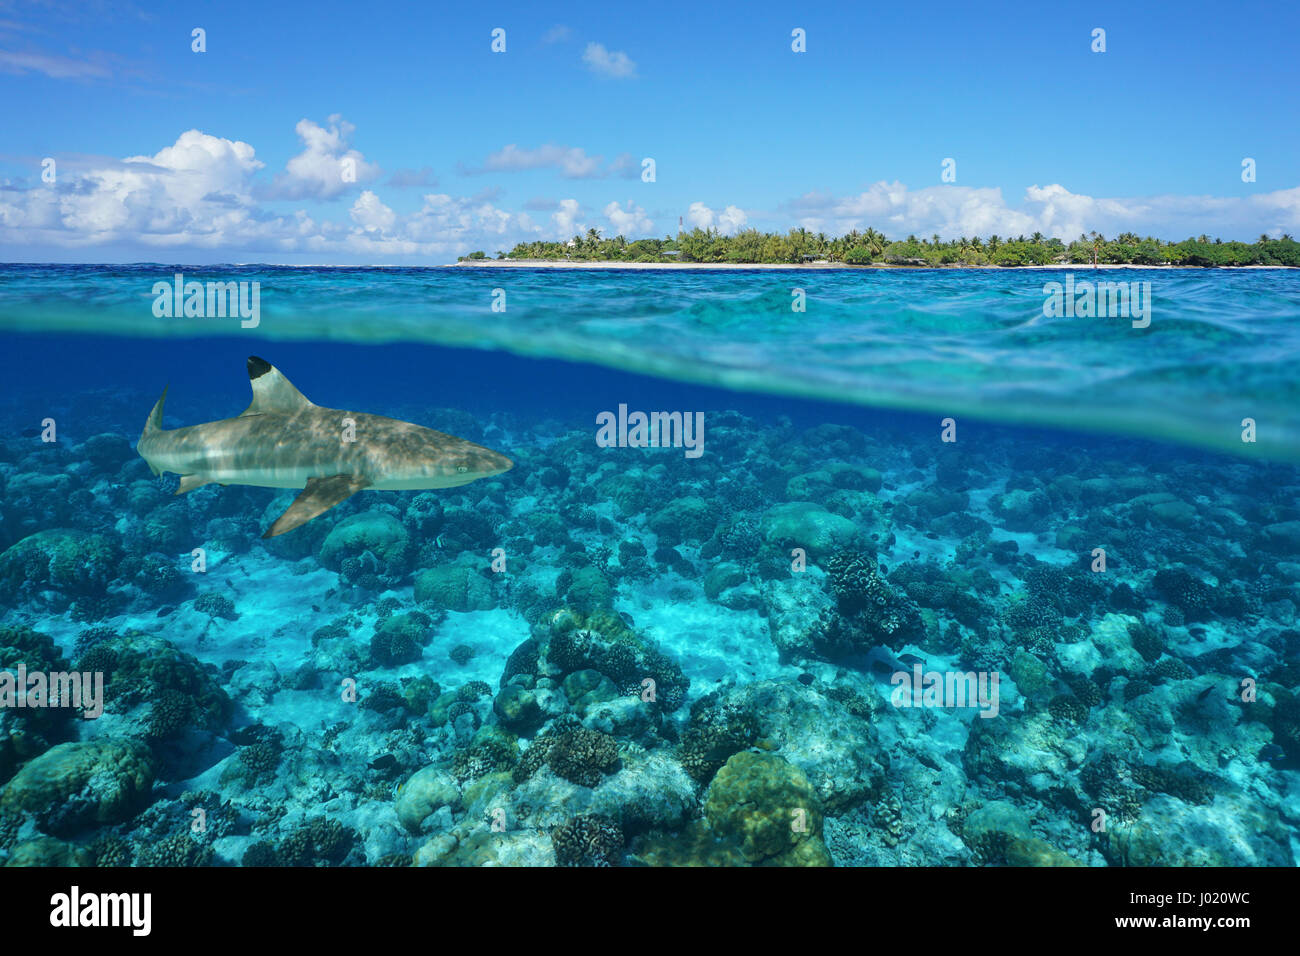 Por encima y por debajo de la superficie del mar con una isla y un tiburón bajo el agua, pase de Tiputa, el atolón de Rangiroa, Tuamotu, en la Polinesia francesa, Océano Pacífico Foto de stock